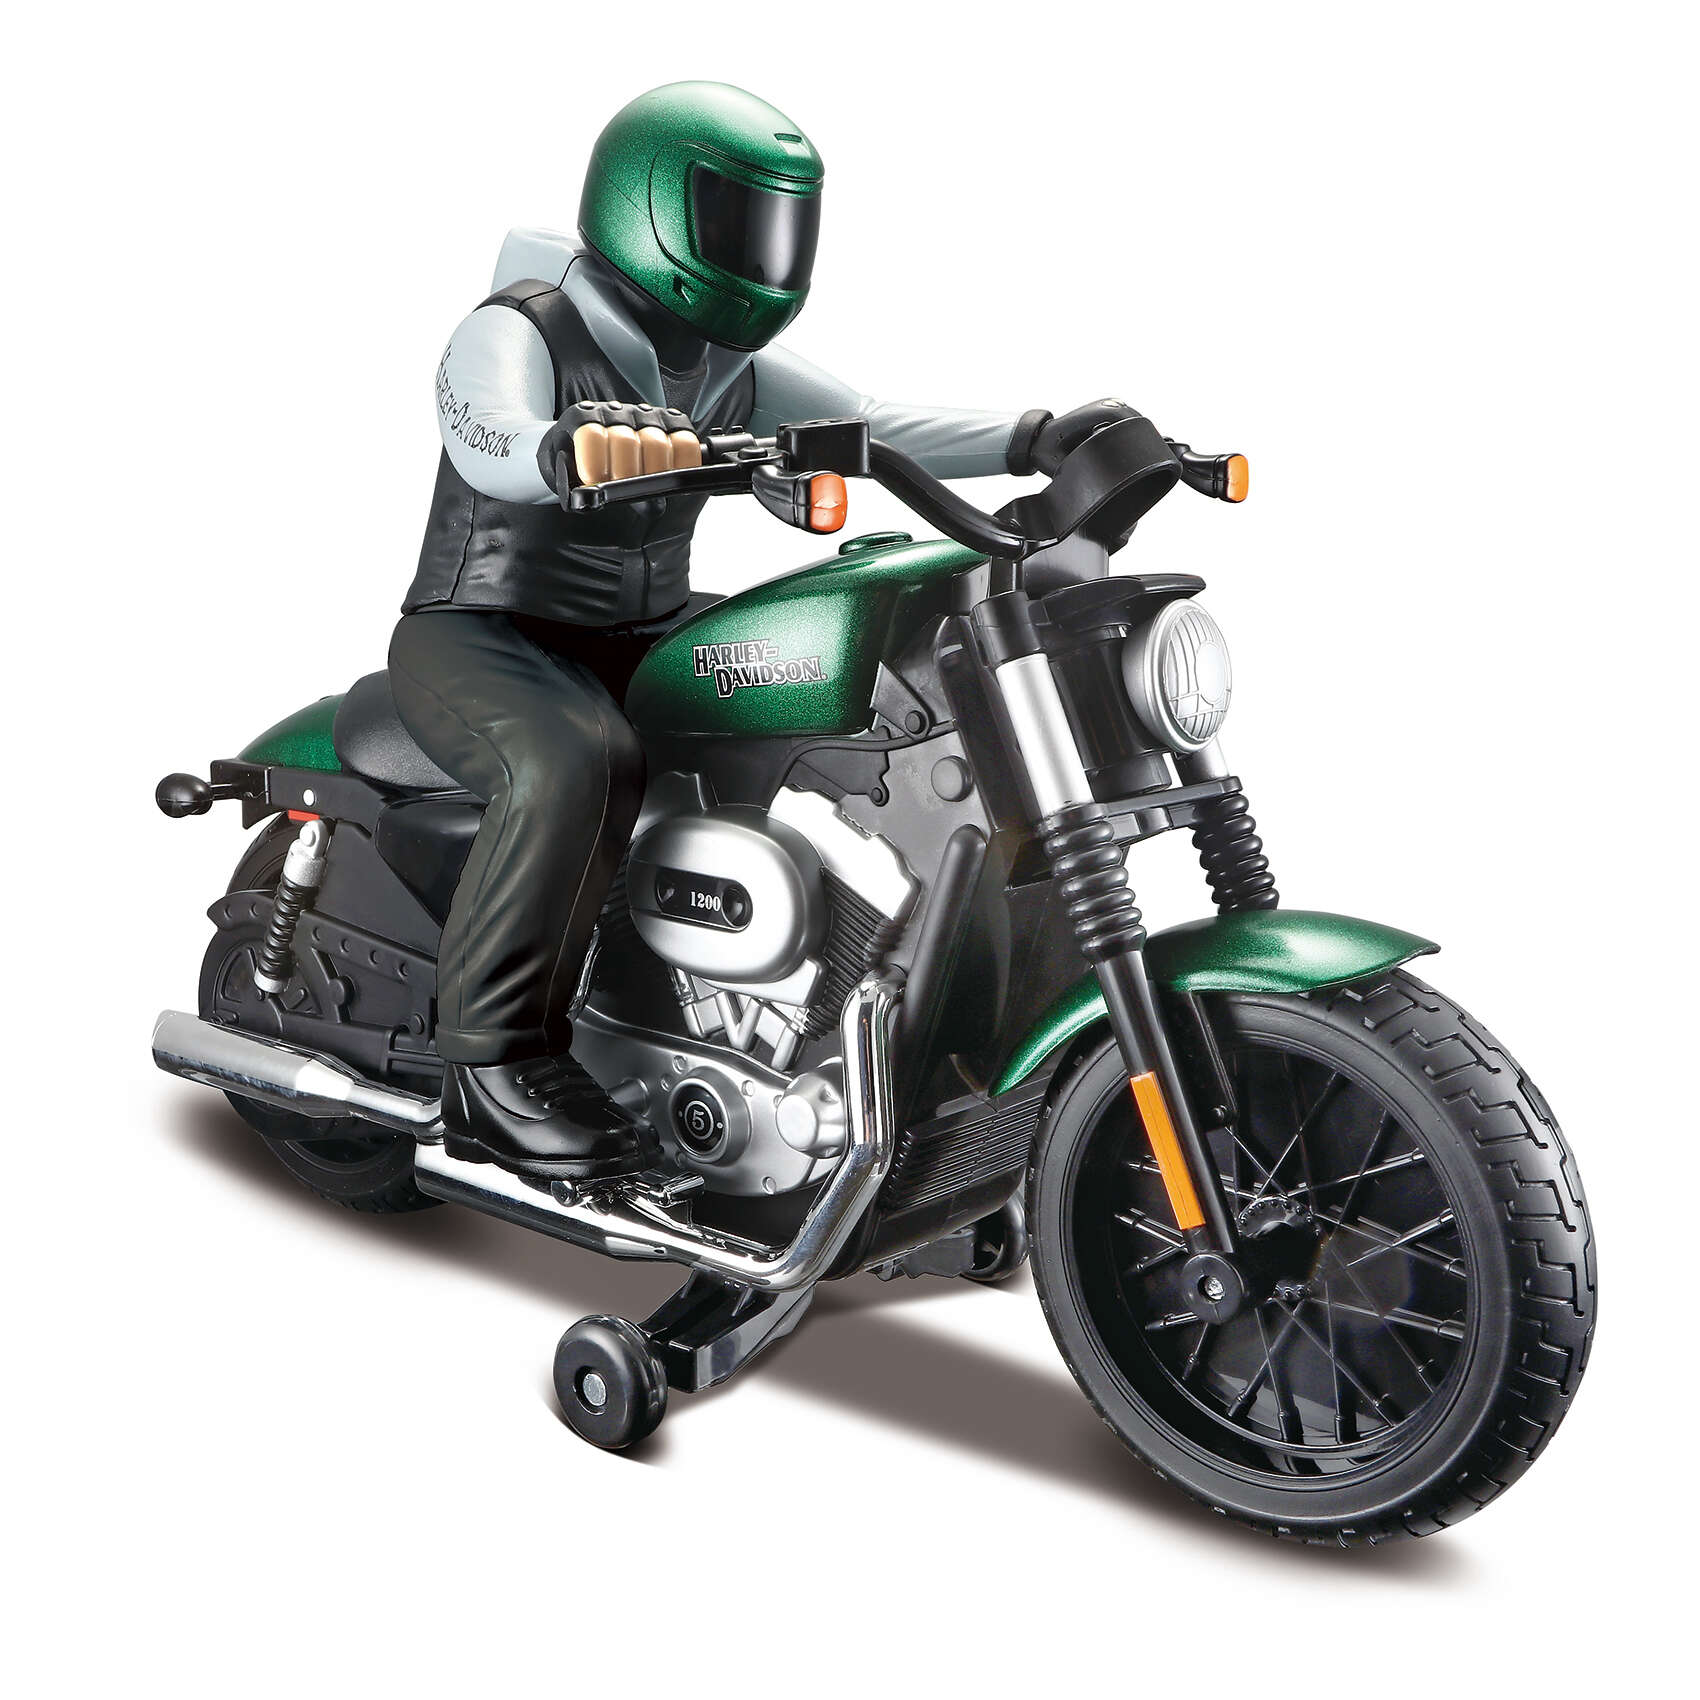 Maisto - Harley Davidson R/C with Rider 27/40Mhz - Green (140012)